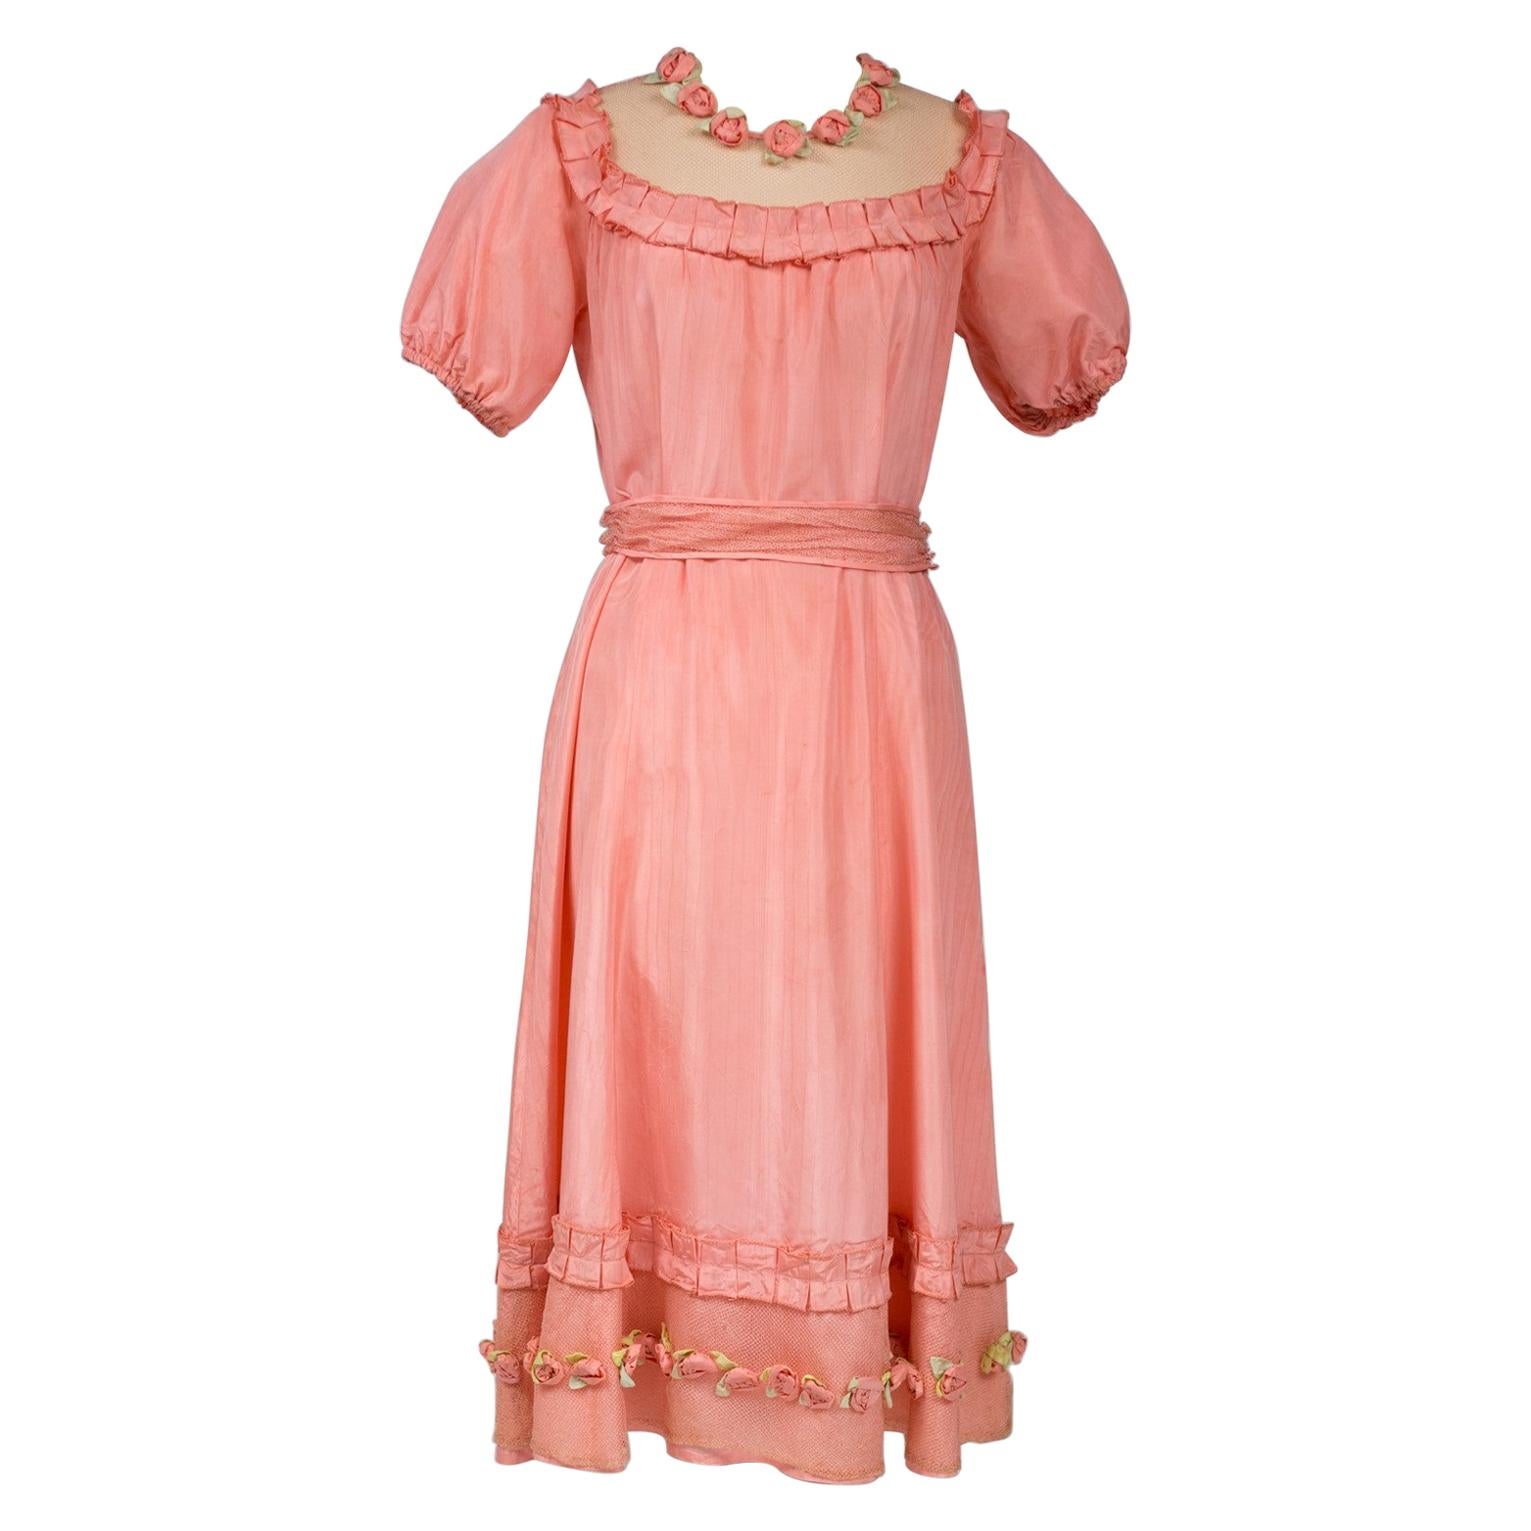 A French Summer Dress In Rayonne Taffeta Fabric Circa 1920/1930